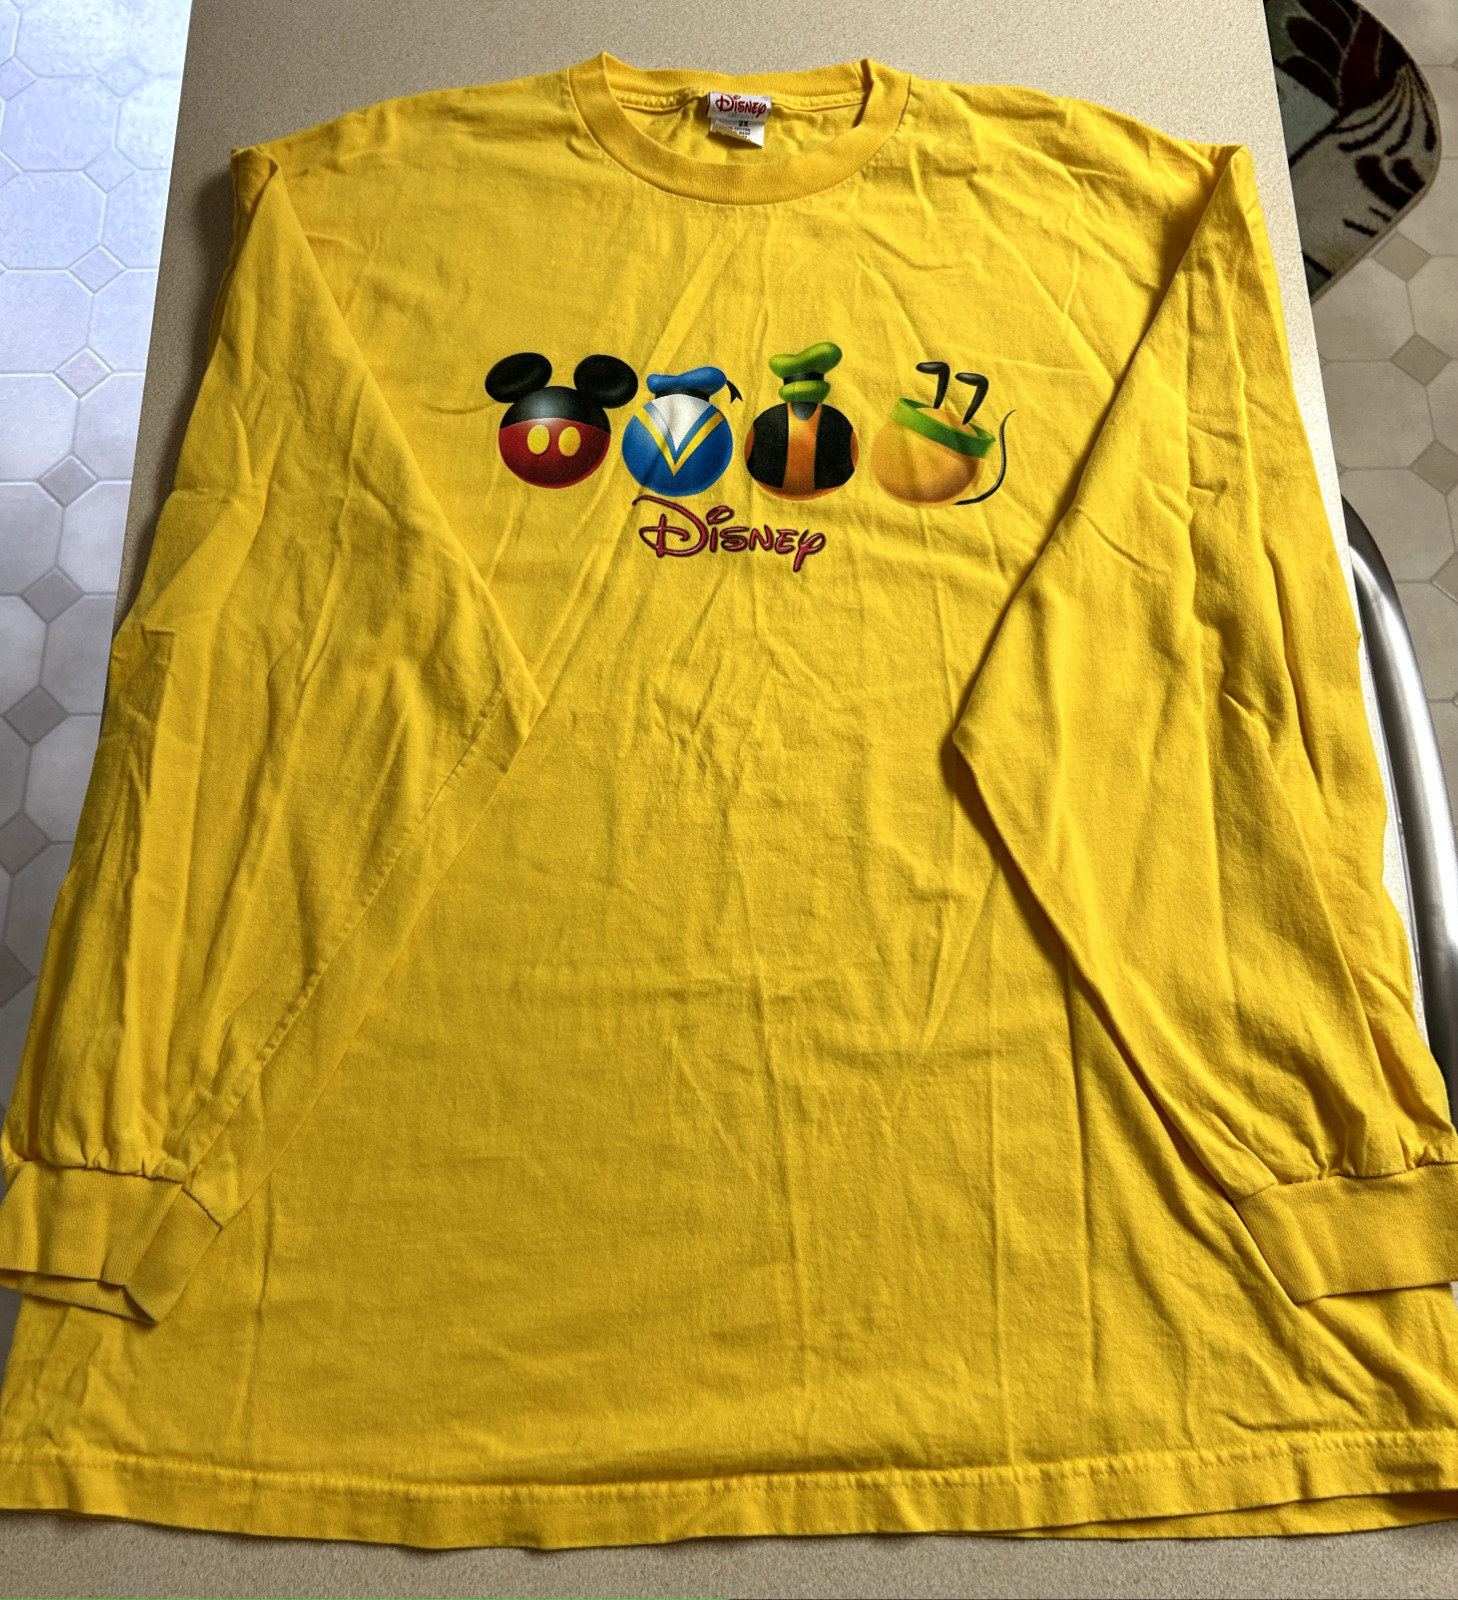 Disney Long Sleeve Shirt size adult 2X